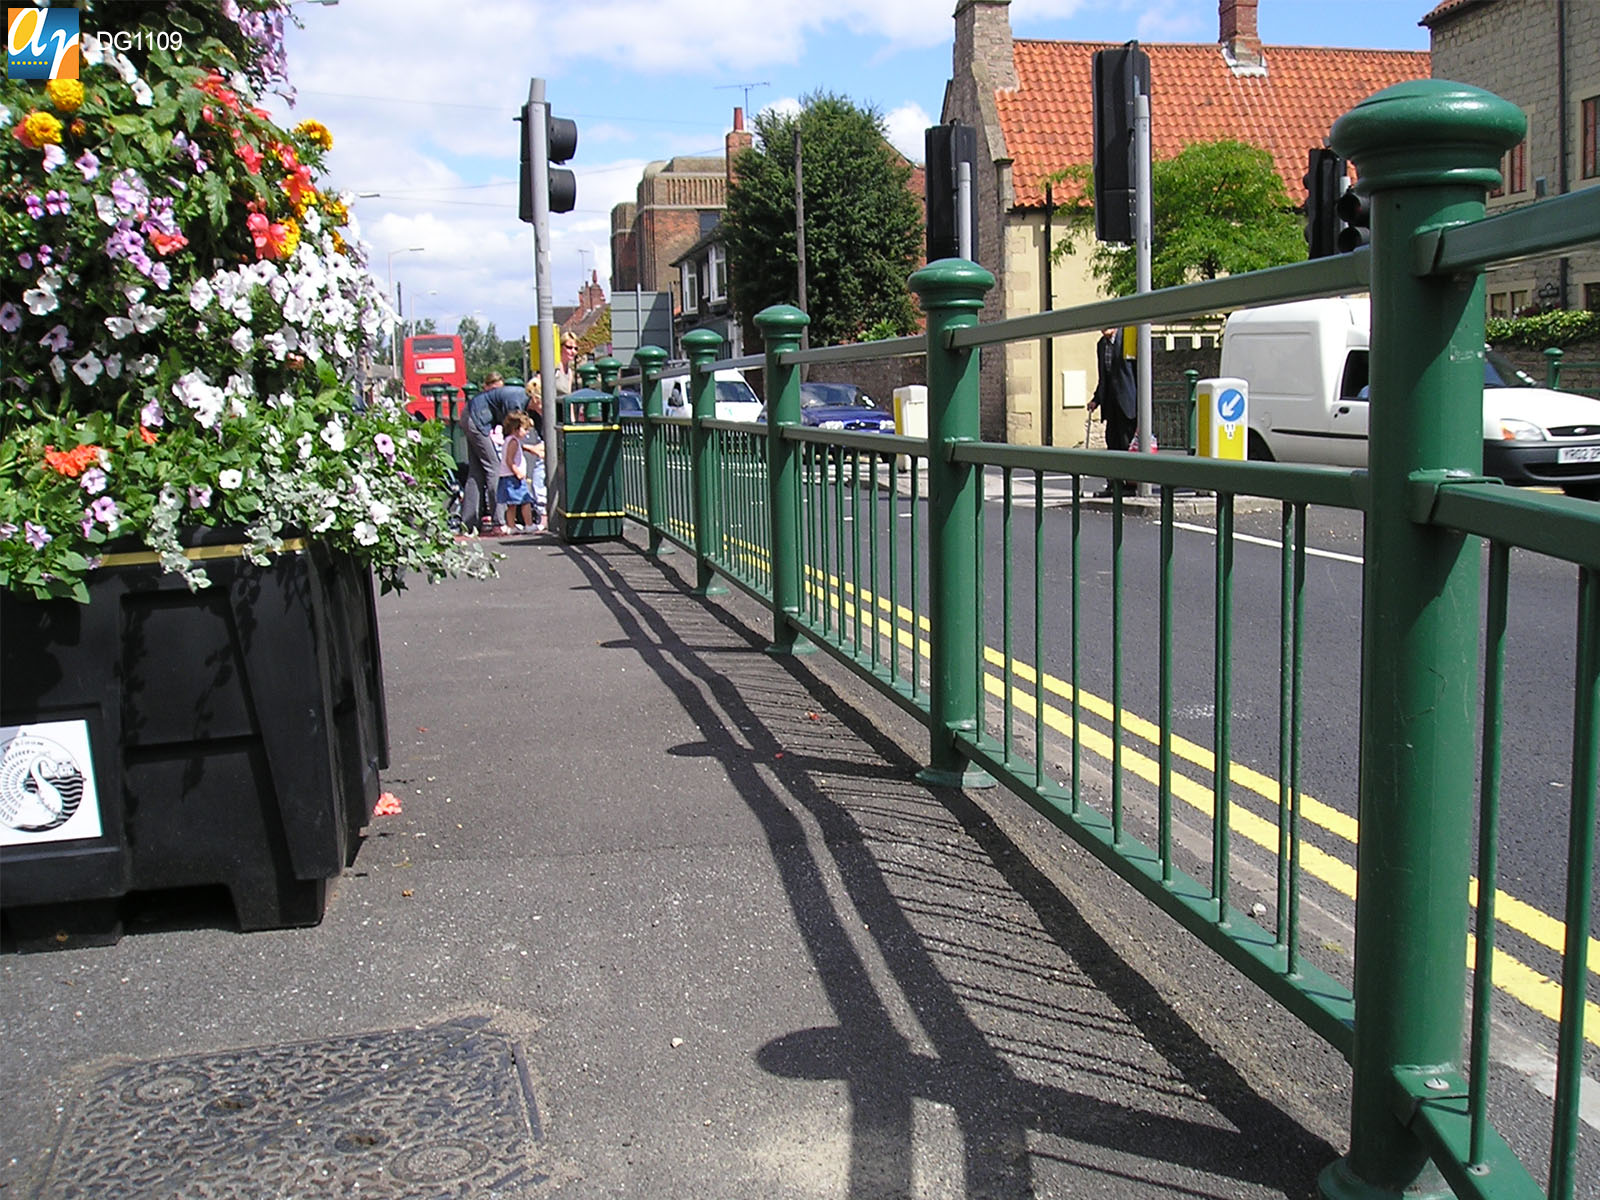 Decorative pedestrian guardrail